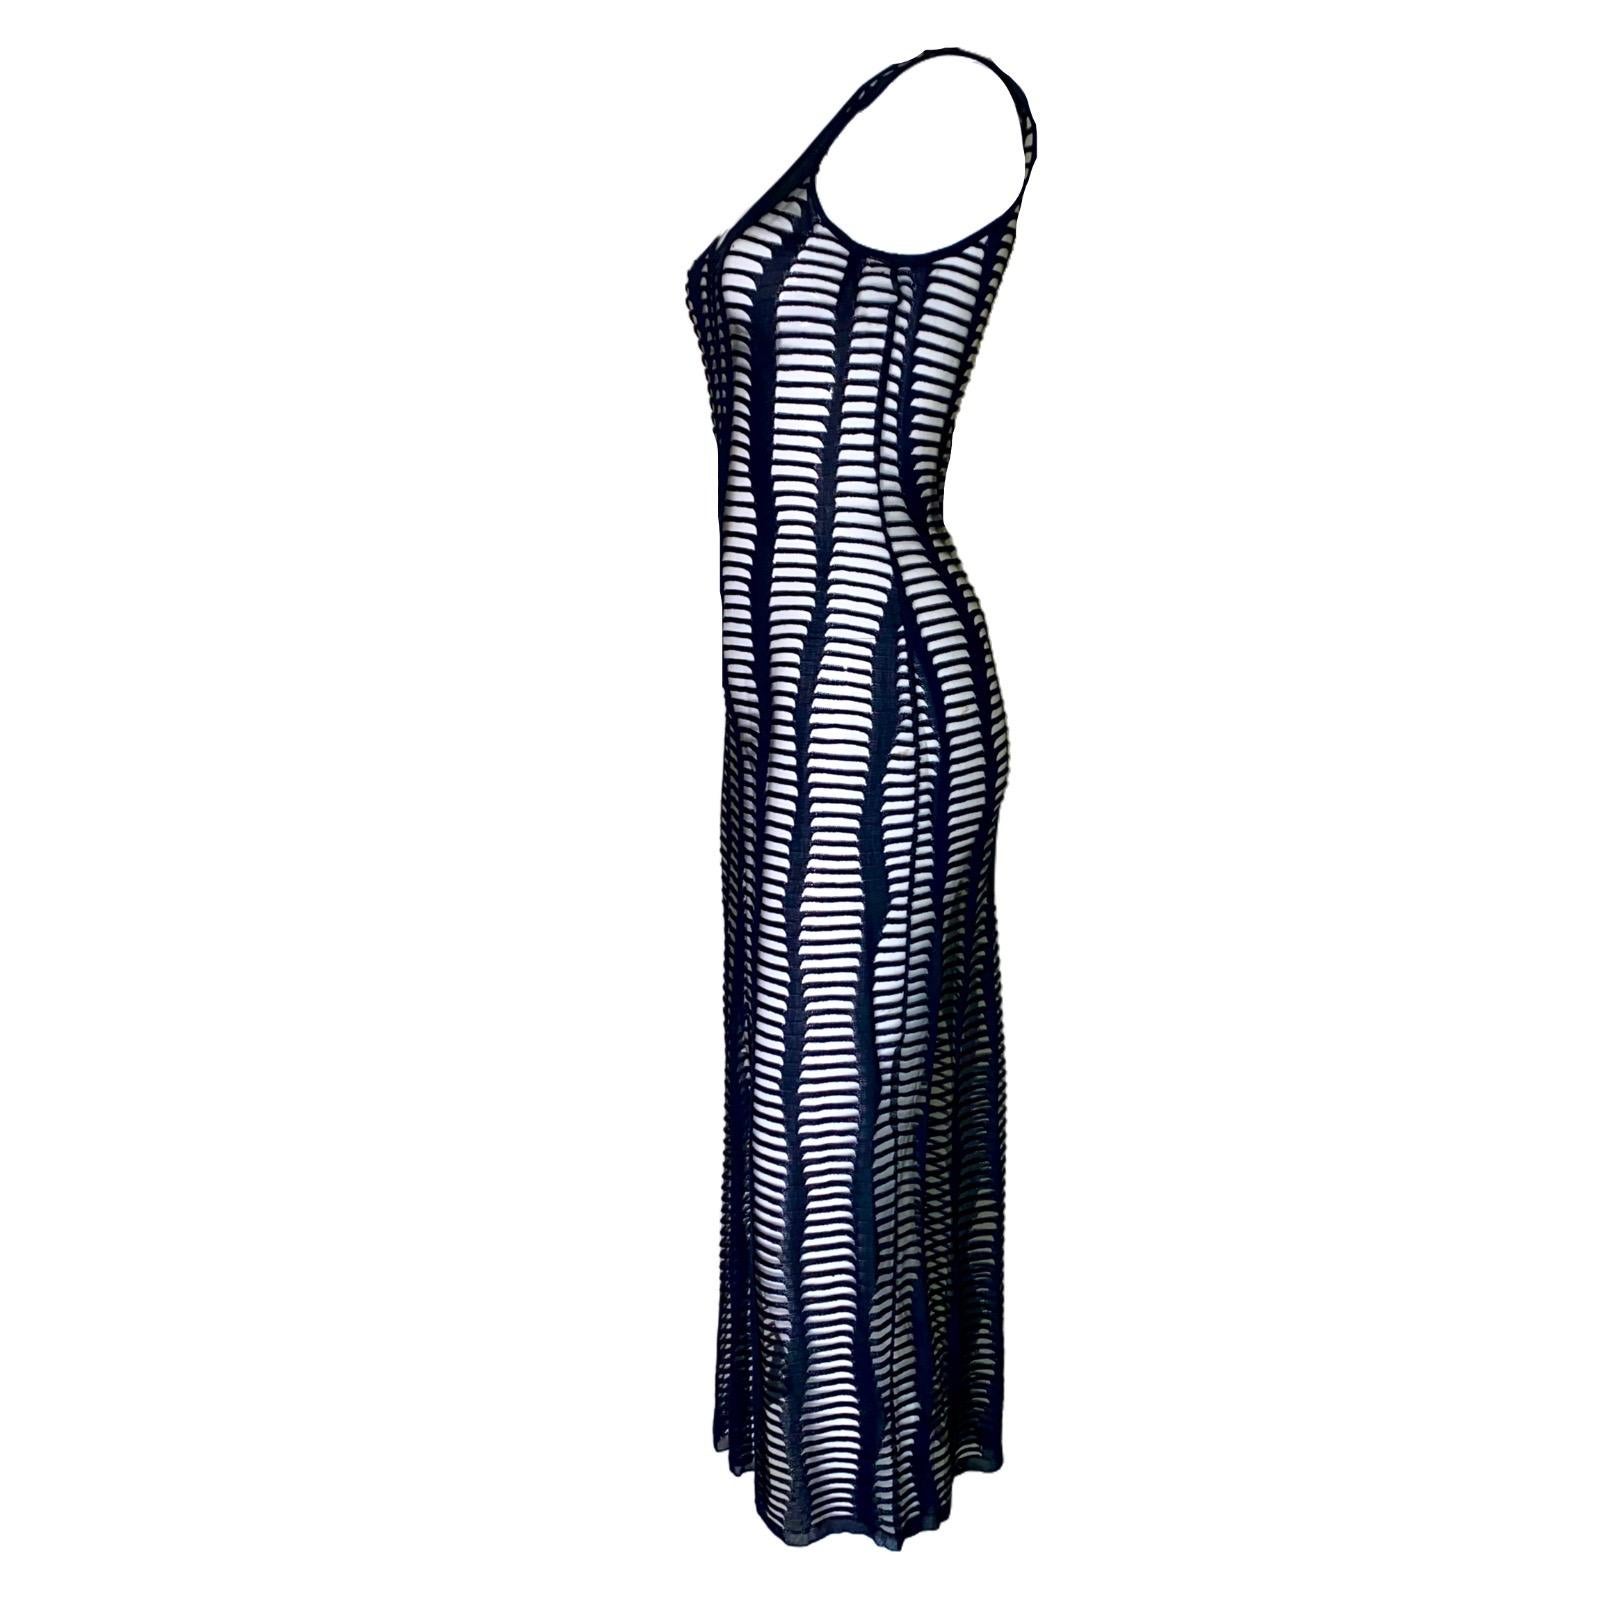 Pièce époustouflante de John Galliano pour Christian Dior
De la fameuse collection Printemps / Été 2001
Fantastique robe noire en tricot à découpes avec un tissu en maille entre les ouvertures.
Il suffit de l'enfiler
Nettoyage à sec